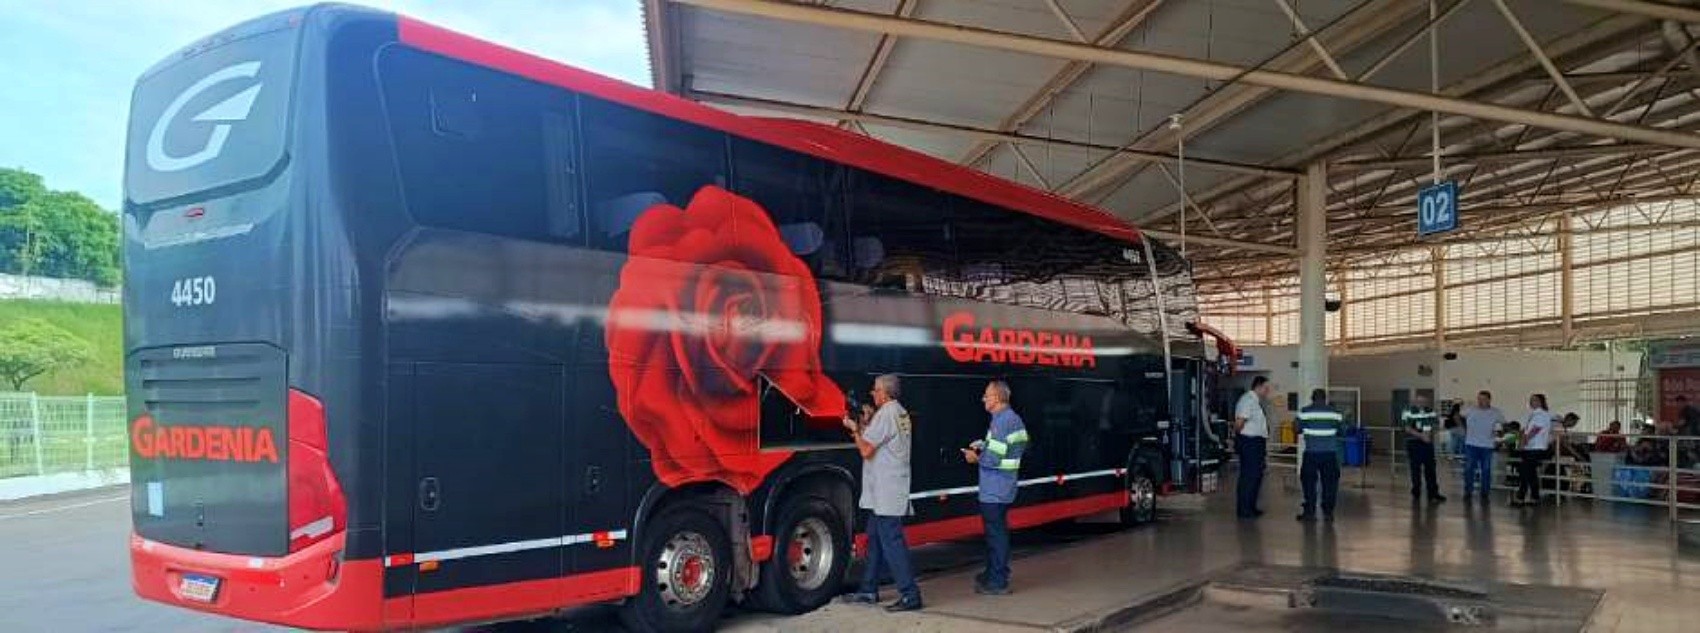 Fiscalização tira de circulação dez ônibus com problemas de manutenção no Sul de Minas